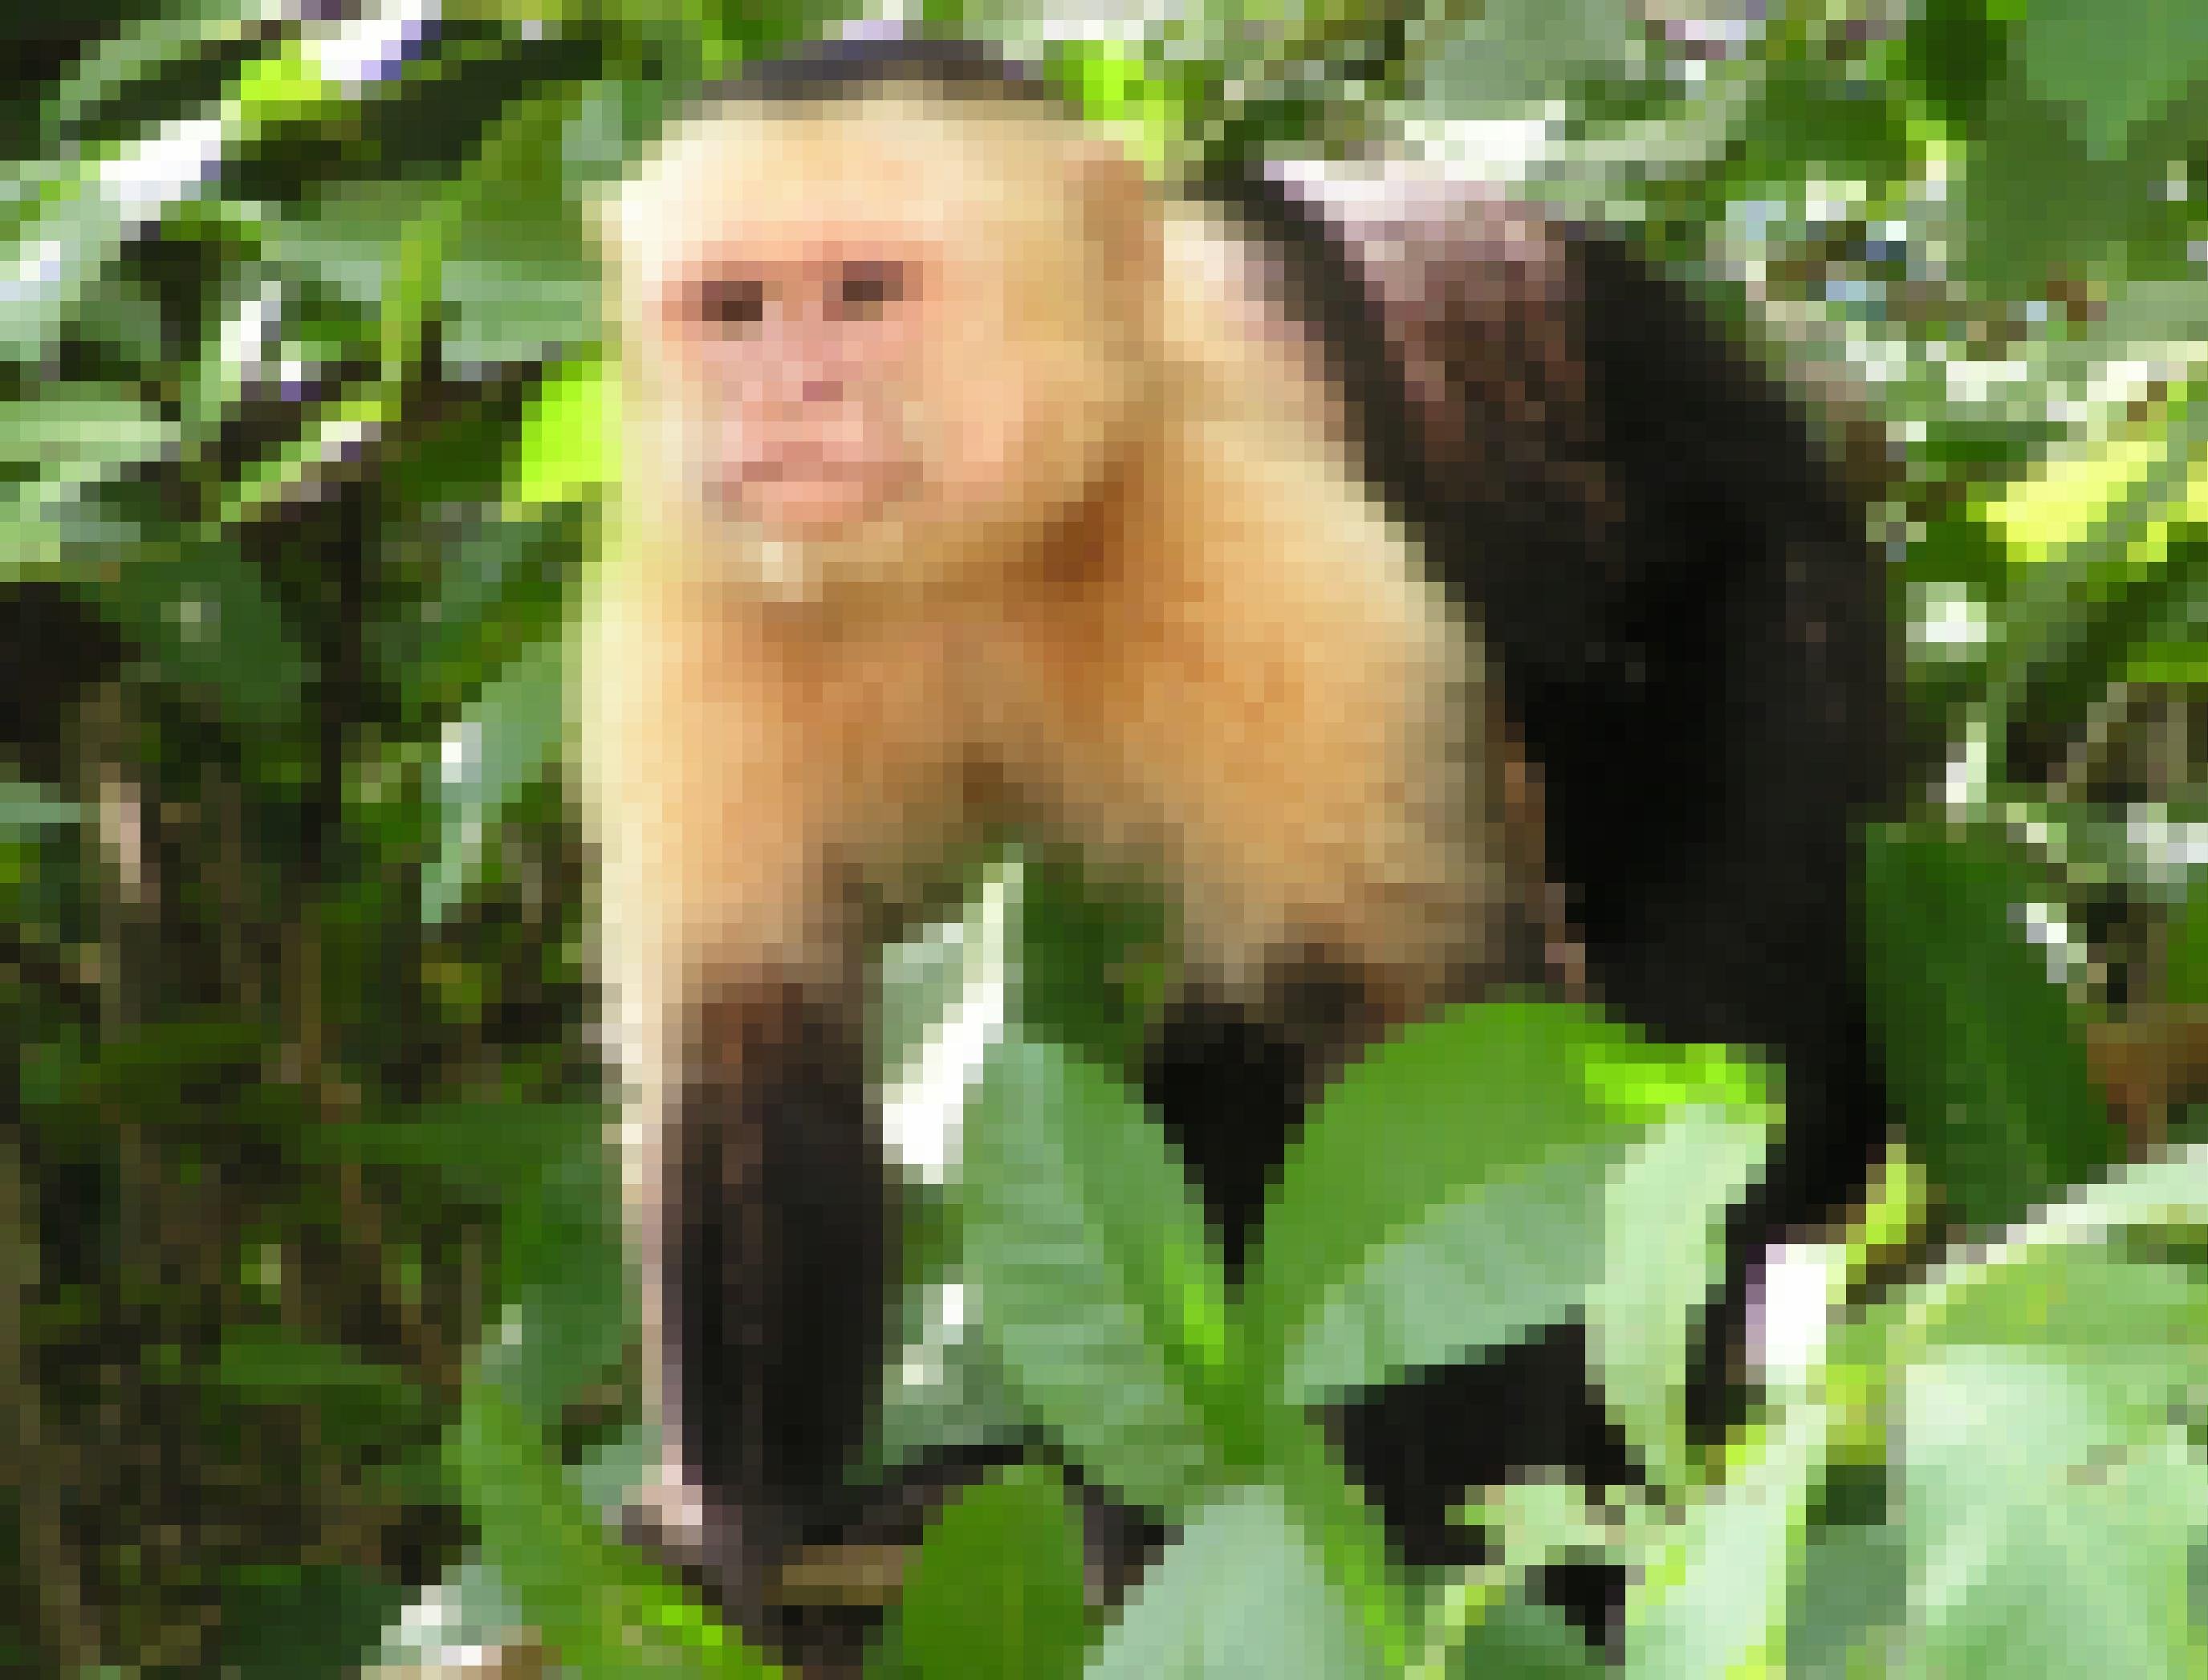 Zu sehen ist ein Kapuzineraffe im Geäst eines Regenwaldbaumes in Costa Rica. Er schaut aufmerksam nach links vorne, als habe er dort etwas entdeckt. Der Affe ist am Kopf und den Oberarmen hell, in einem gelblichen Ton gefärbt, am restlichen Körper dunkelbraun. Er steht auf allen Vieren zwischen grünen Blättern auf dünnen Ästchen. Das Leben im dreidimensionalen Raum des Dschungels und auf den schwankenden Ästen hat vermutlich die Gehirnentwicklung der Affen gefördert.